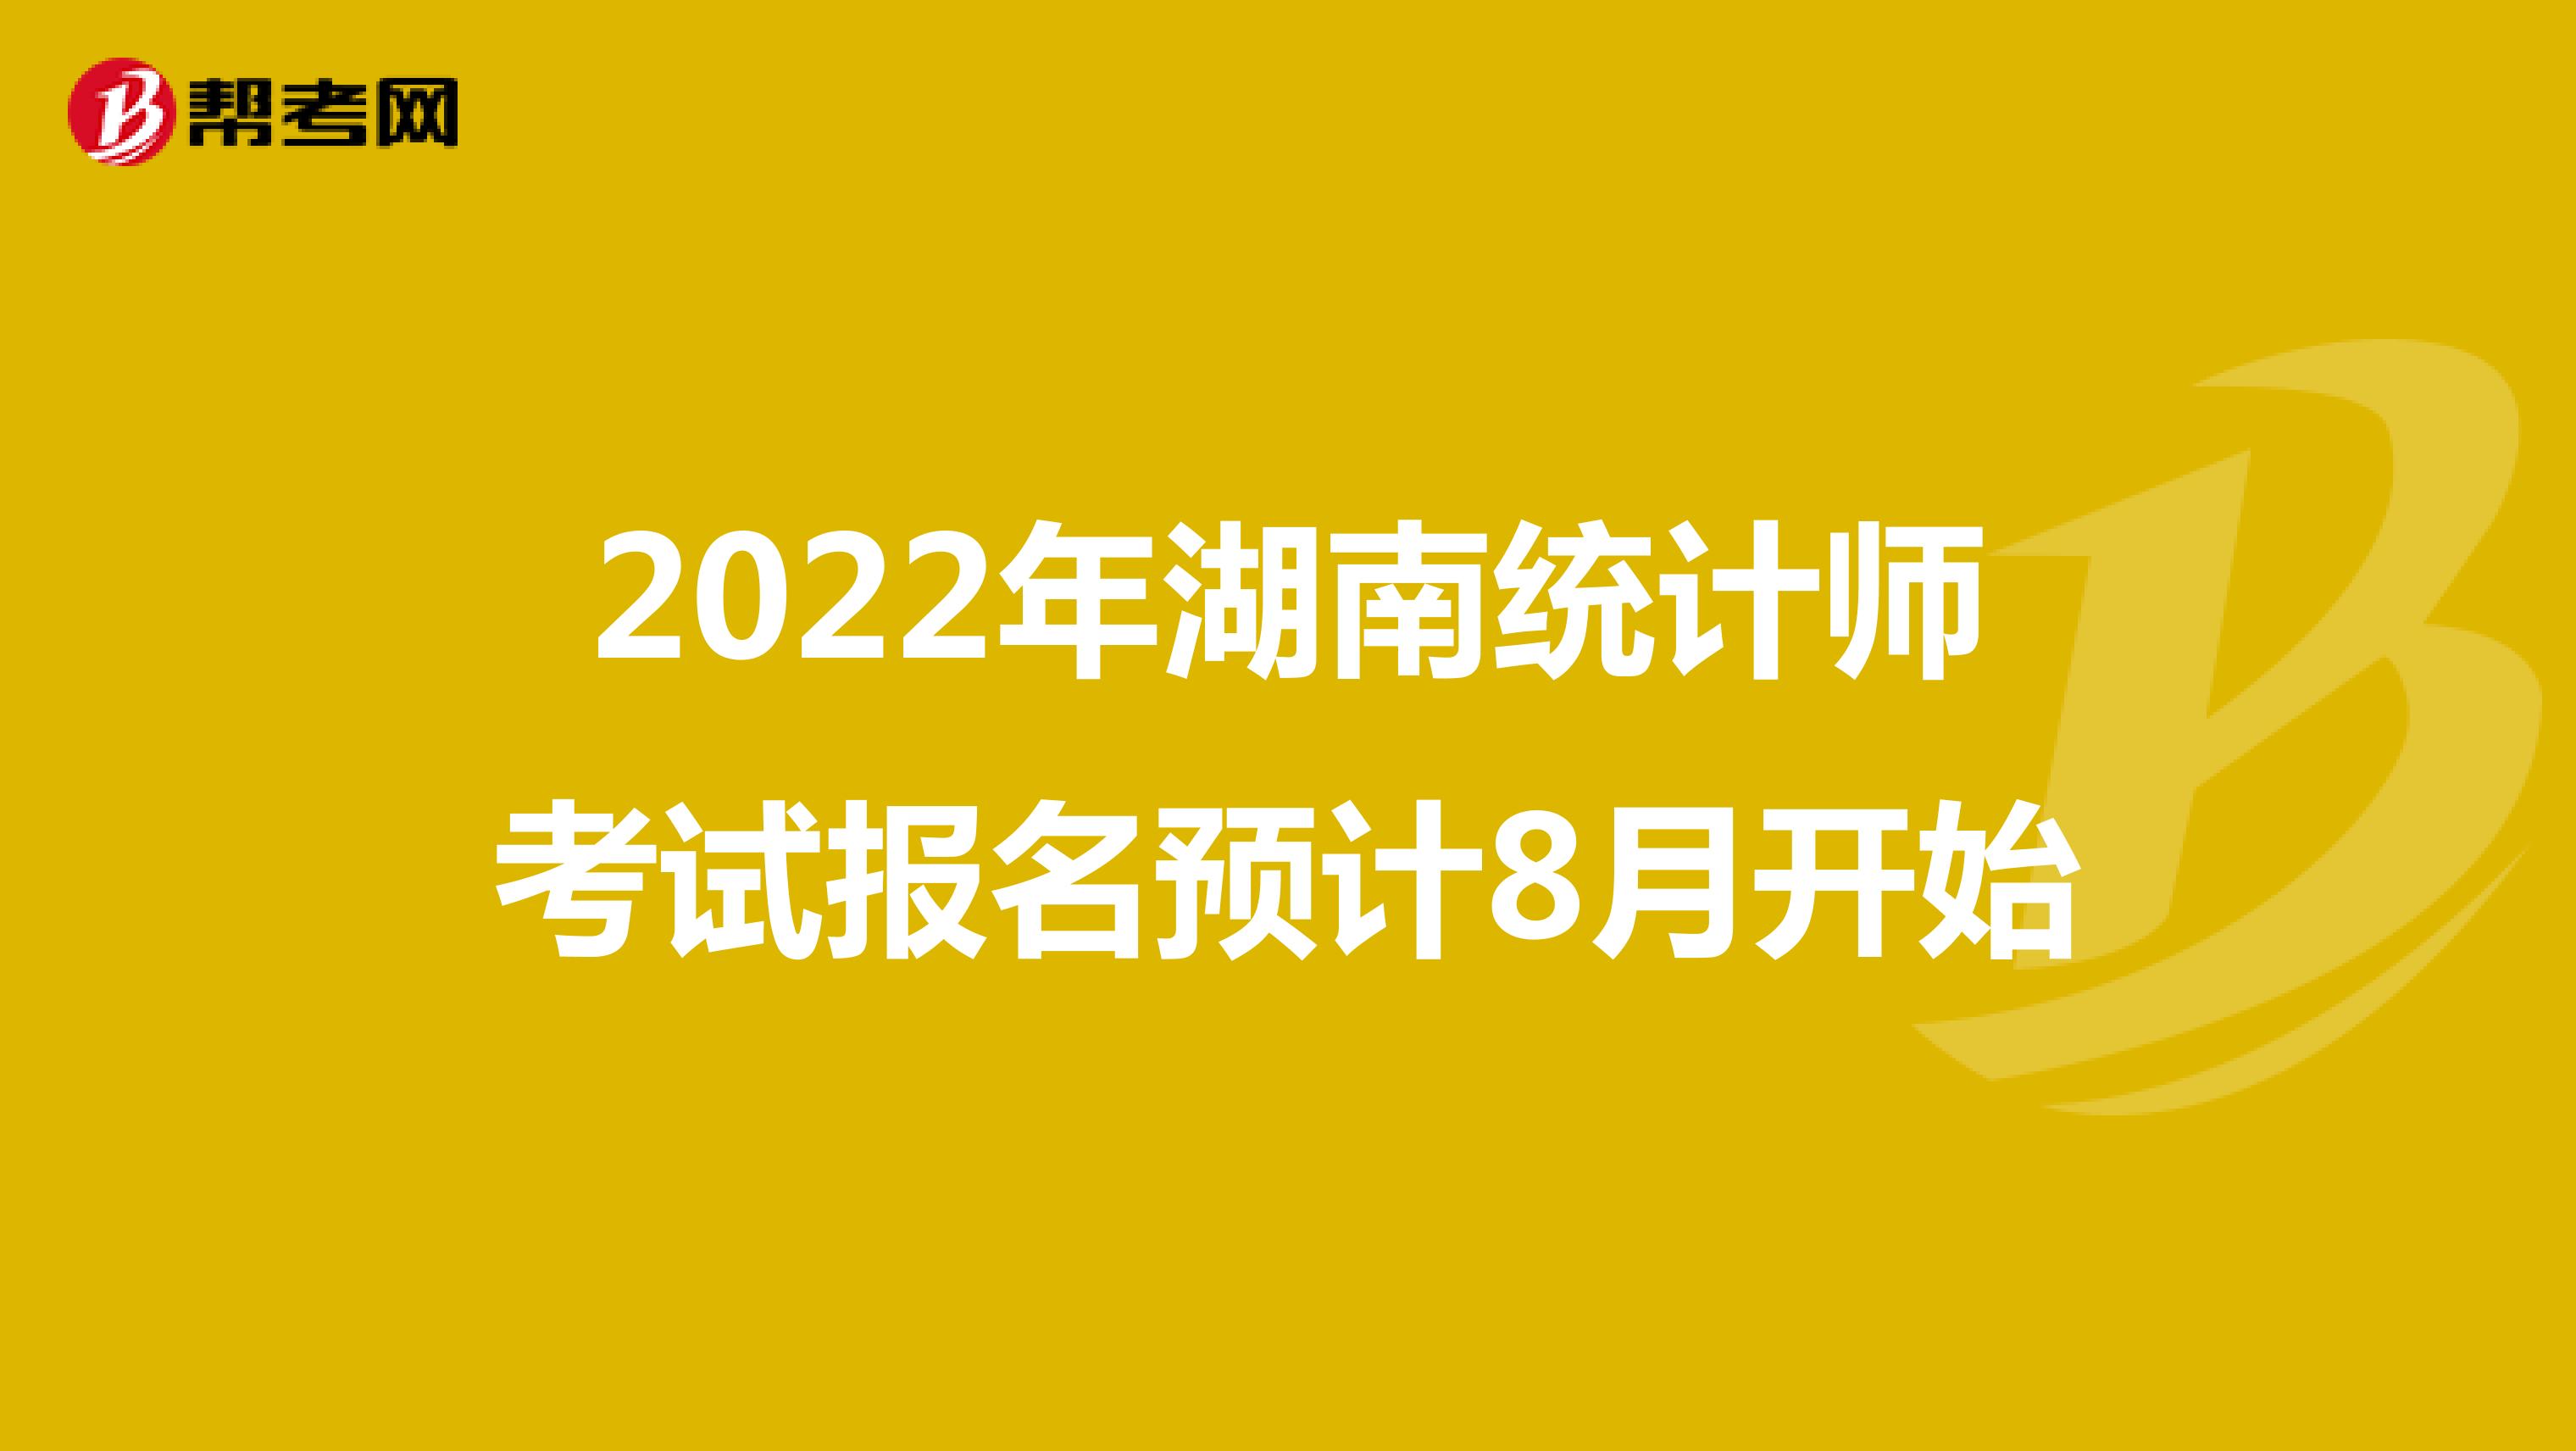 2022年湖南统计师考试报名预计8月开始